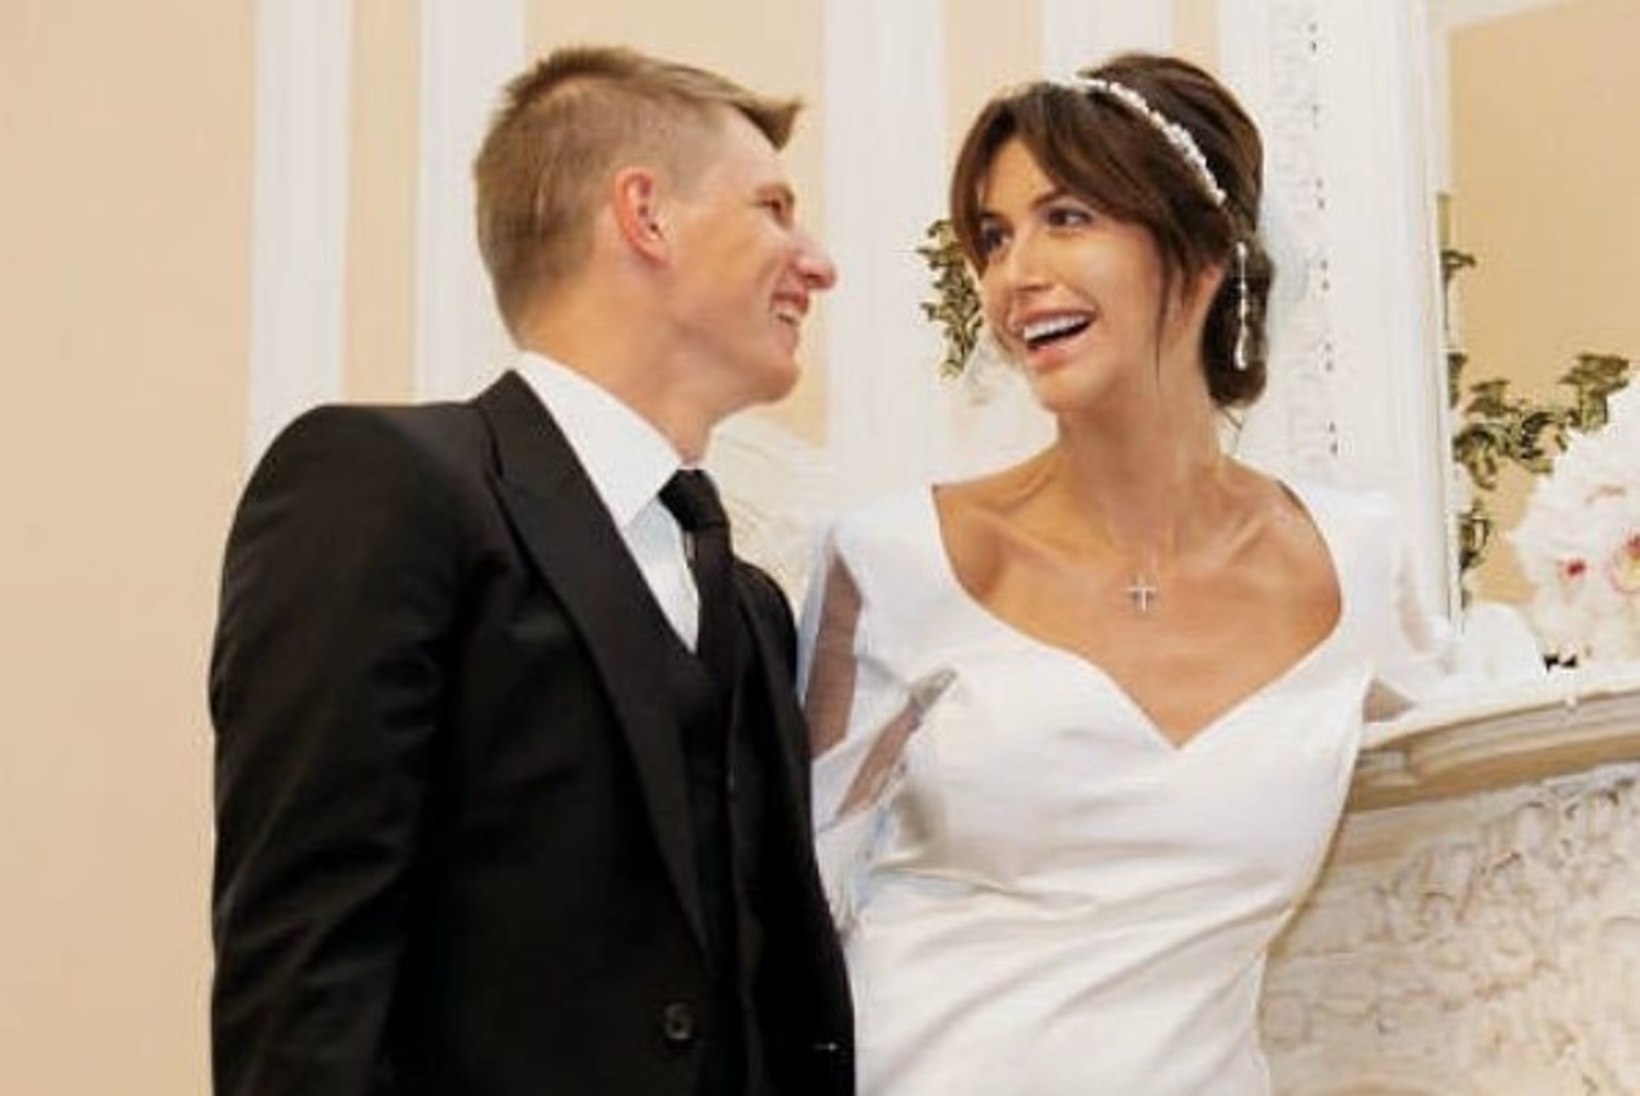 PANI KÕRVALT! Hiljuti esimest pulma-aastapäeva tähistanud Venemaa vutitähe abielu lõhkes